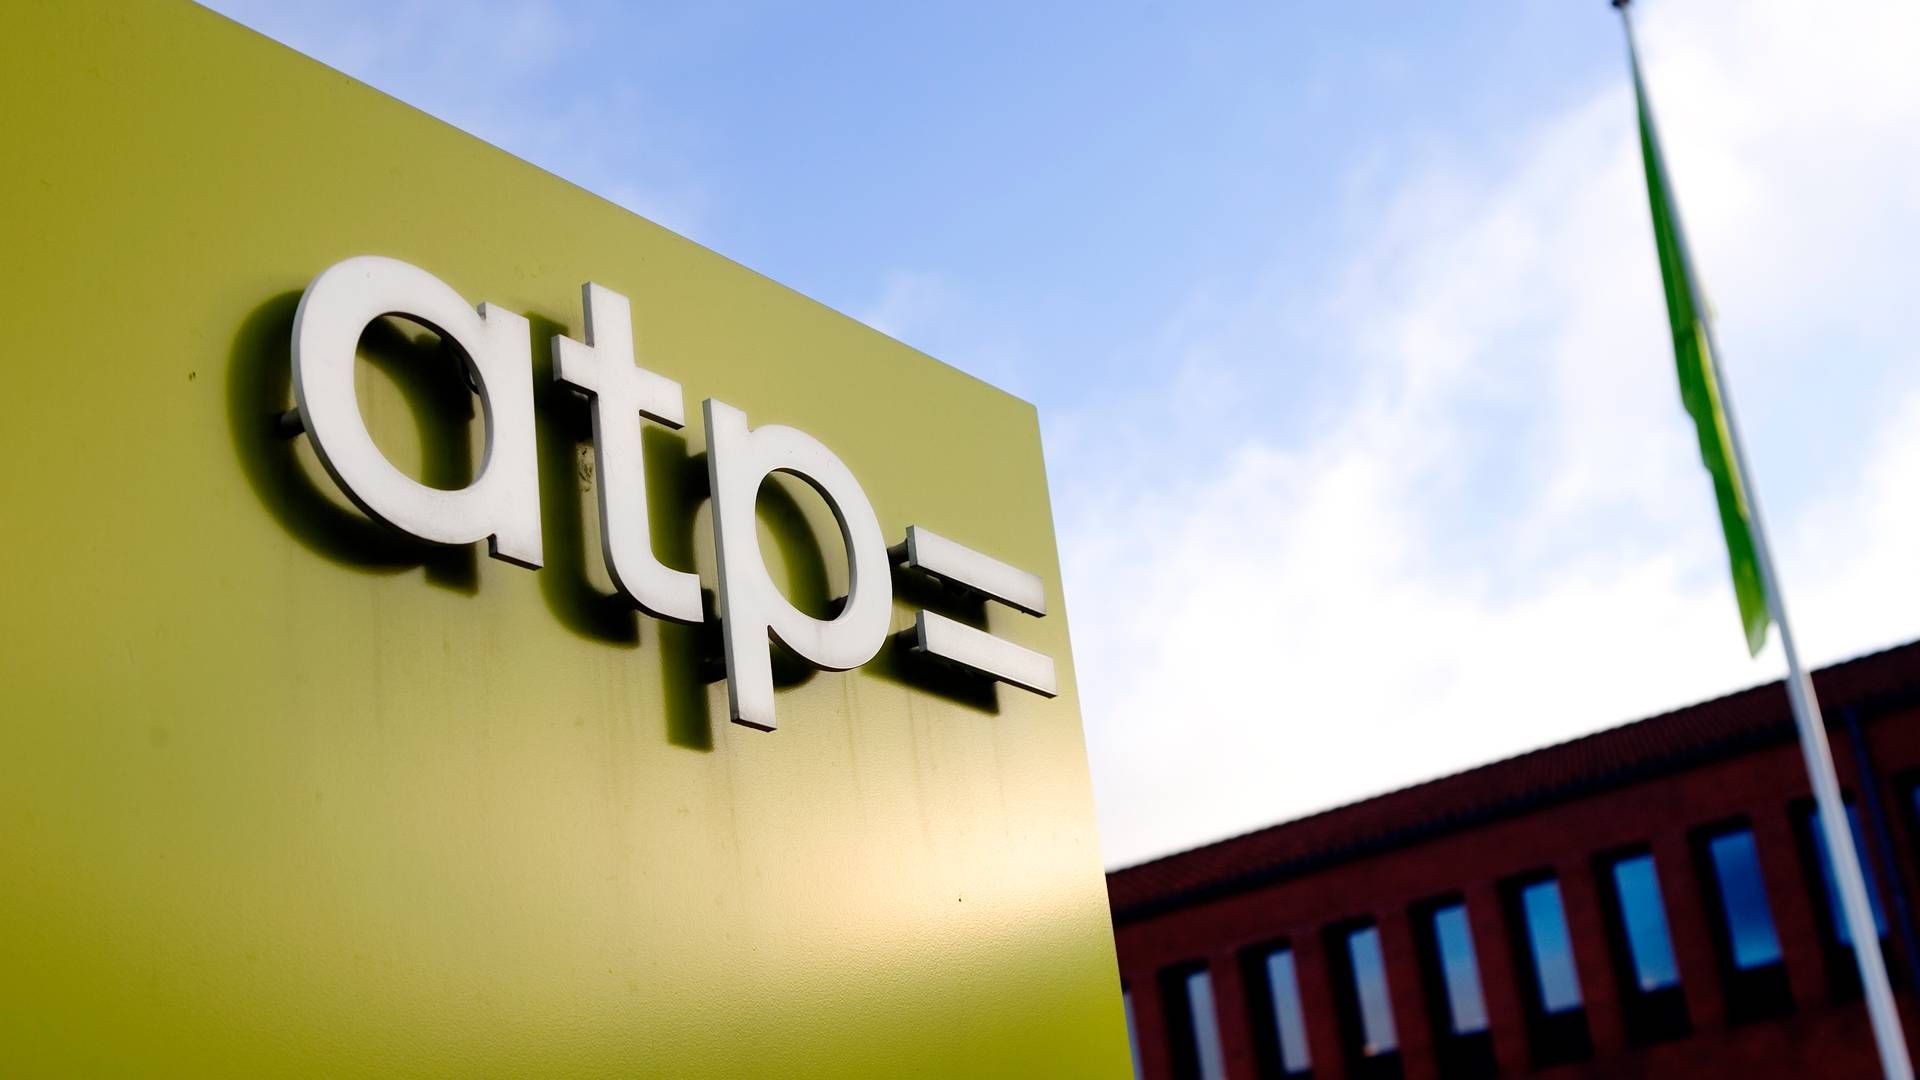 ATP har torsdag sat tal på udviklingen i årets tredje kvartal. | Foto: Thomas Borberg/Politiken/Ritzau Scanpix